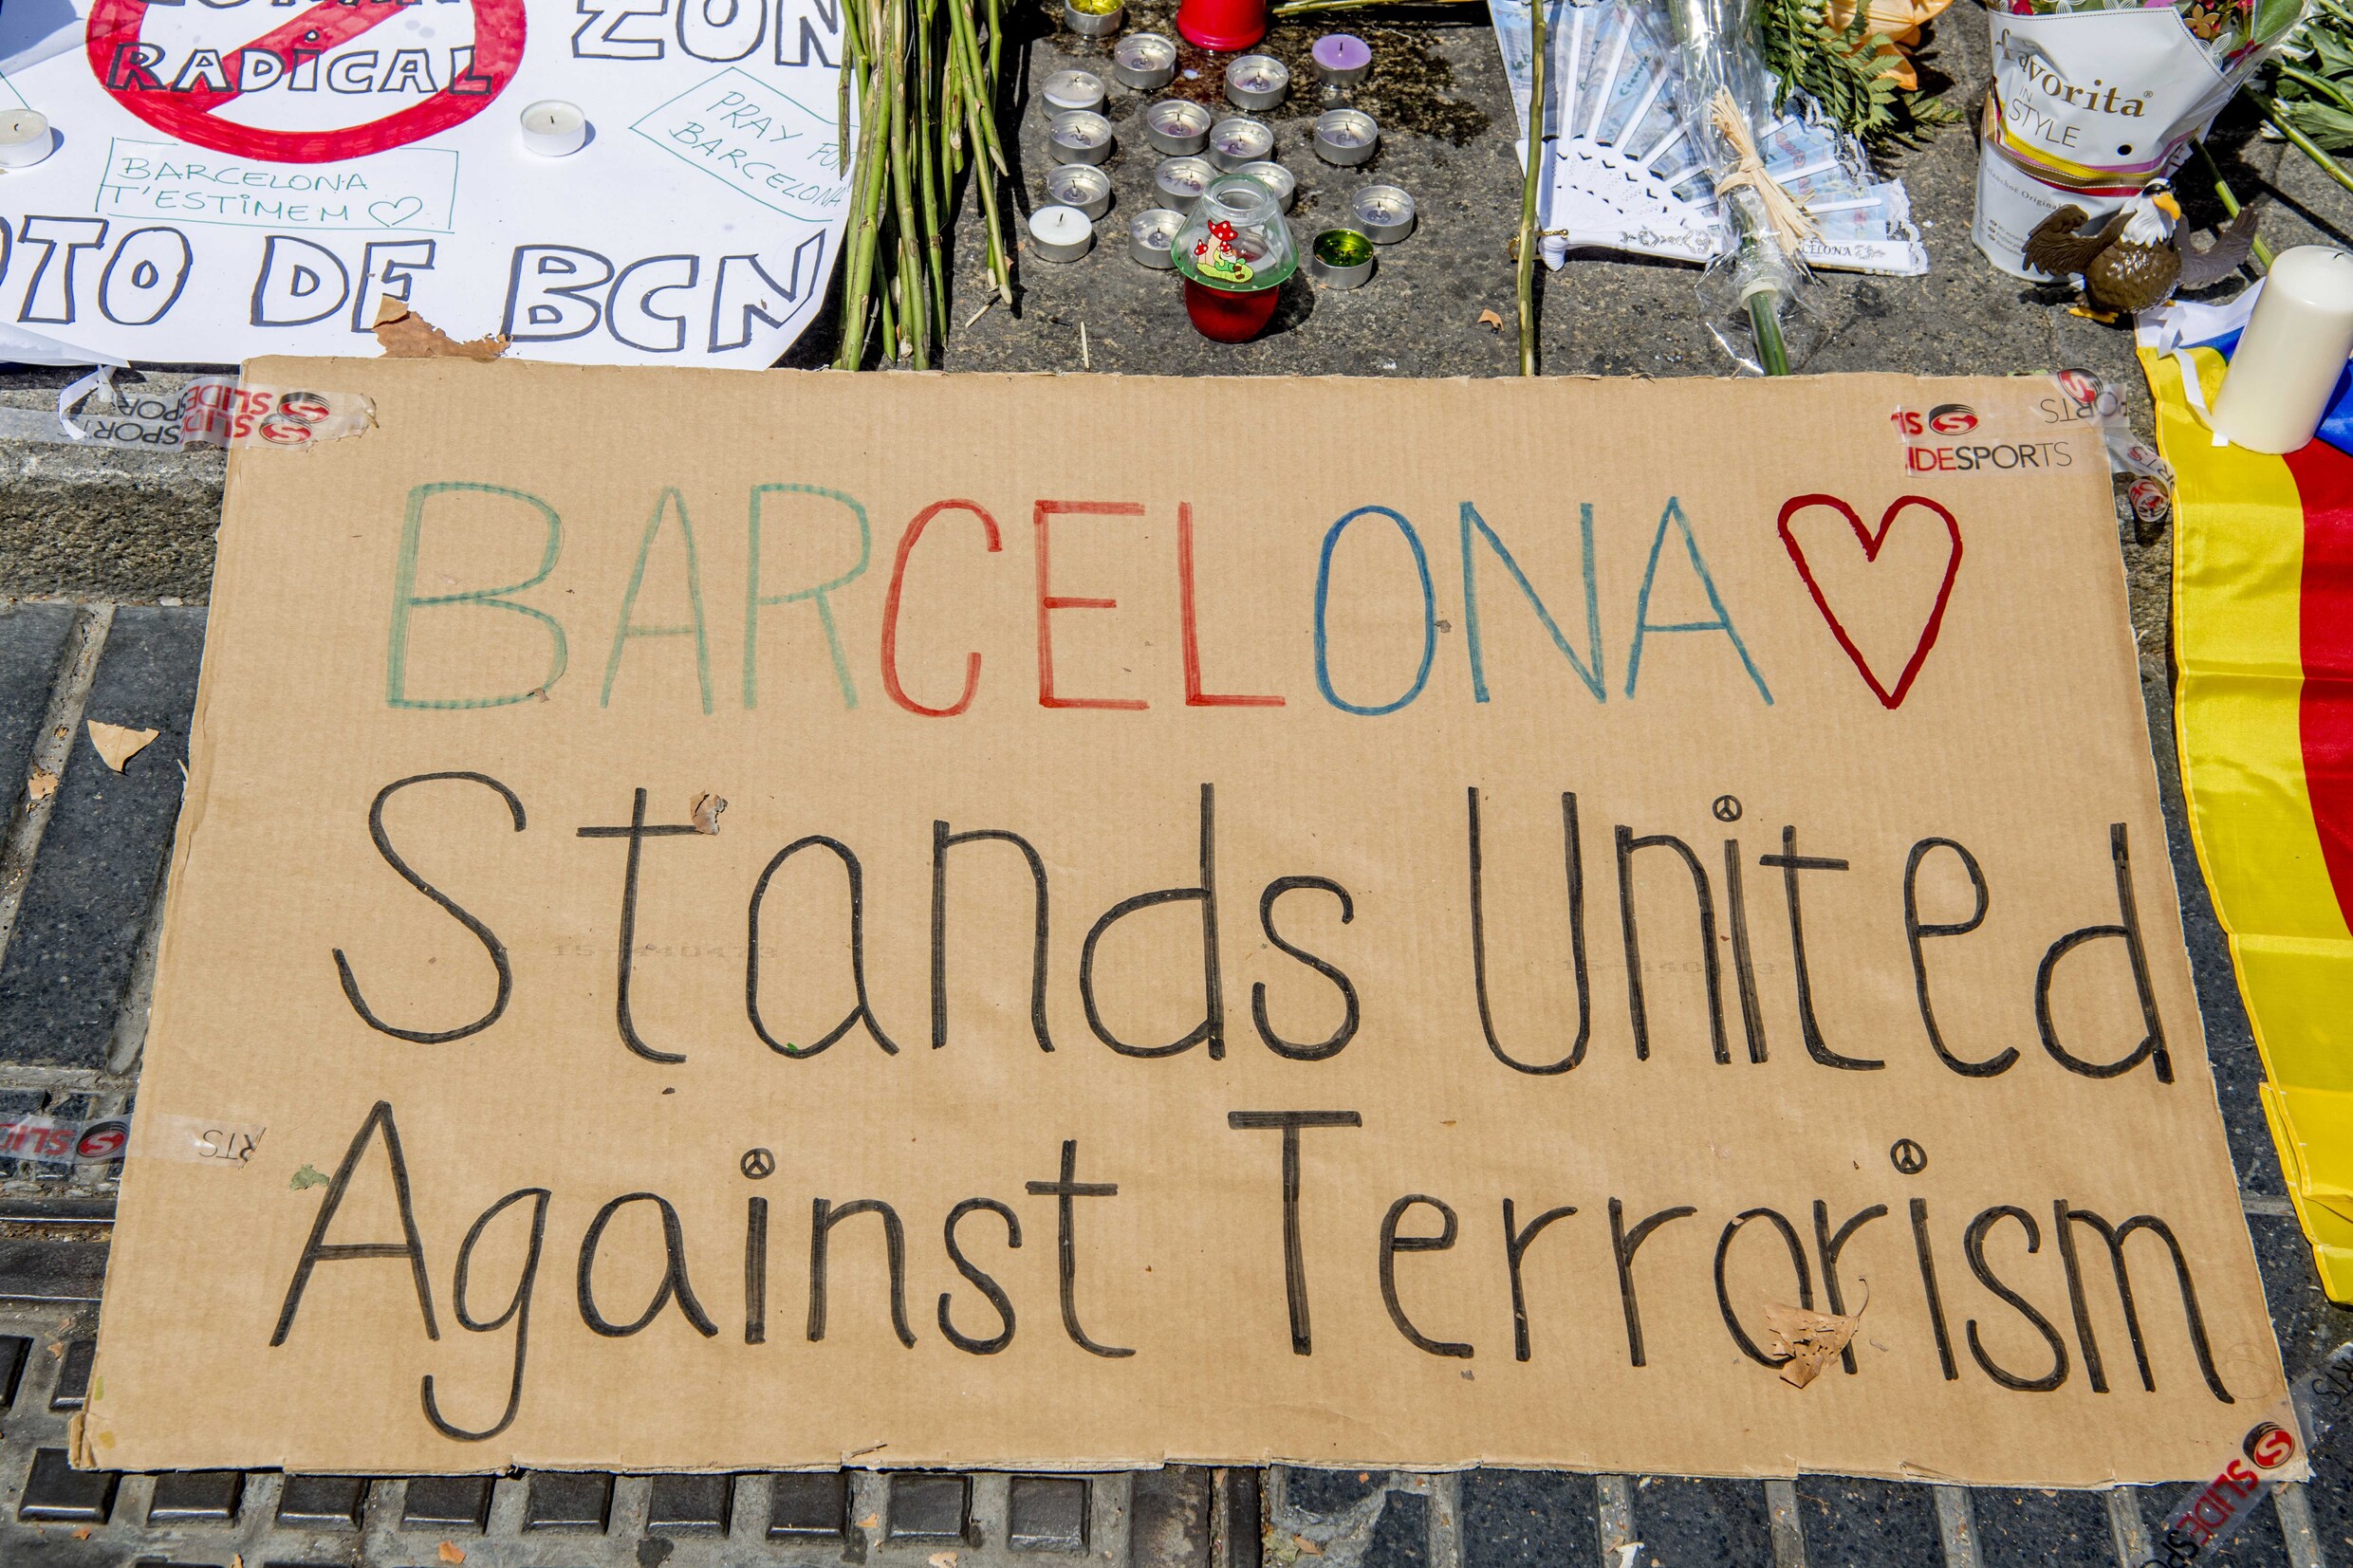 "Terroristen willen paniek zaaien door terreurdaad zo lang mogelijk te rekken"